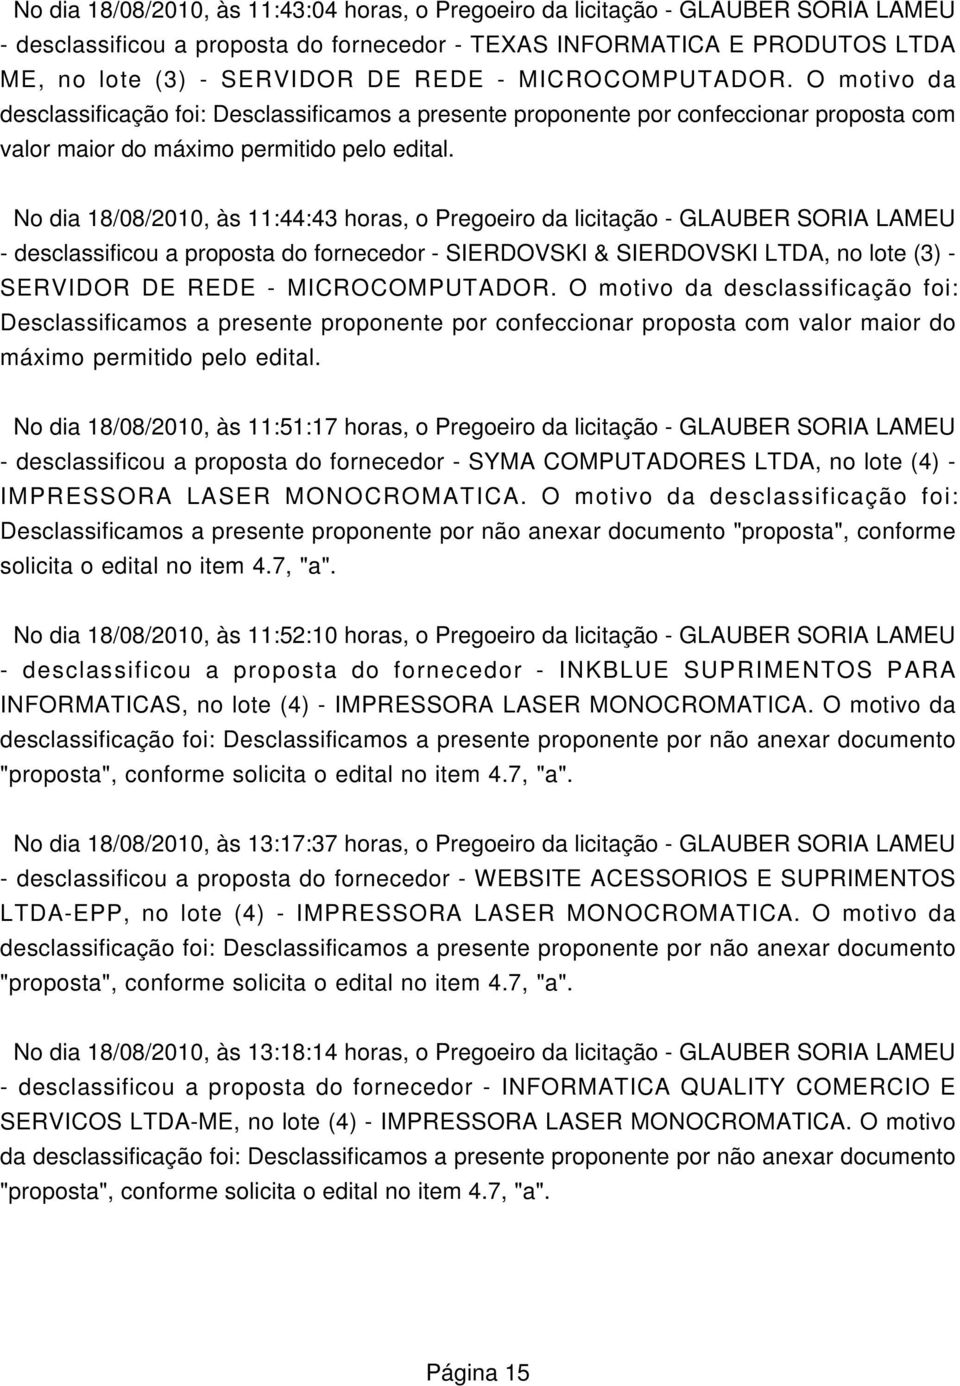 No dia 18/08/2010, às 11:44:43 horas, o Pregoeiro da licitação - GLAUBER SORIA LAMEU - desclassificou a proposta do fornecedor - SIERDOVSKI & SIERDOVSKI LTDA, no lote (3) - SERVIDOR DE REDE -  No dia